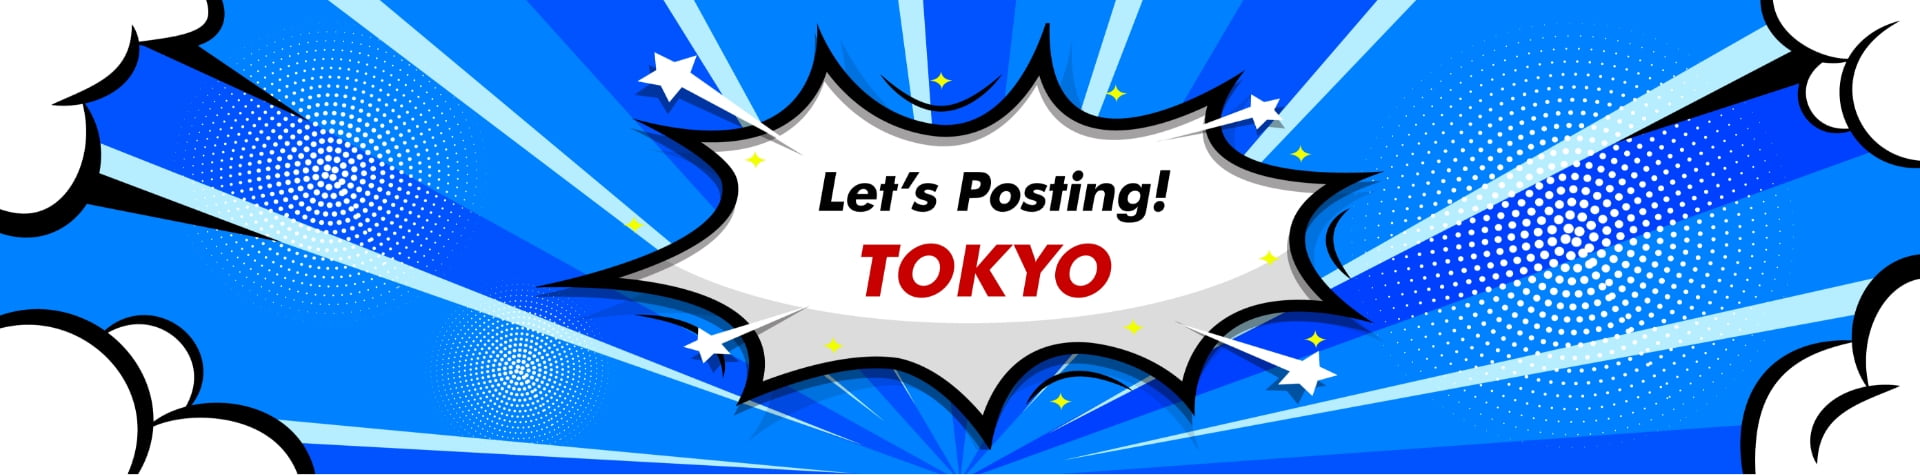 Let's Posting! -tokyo-